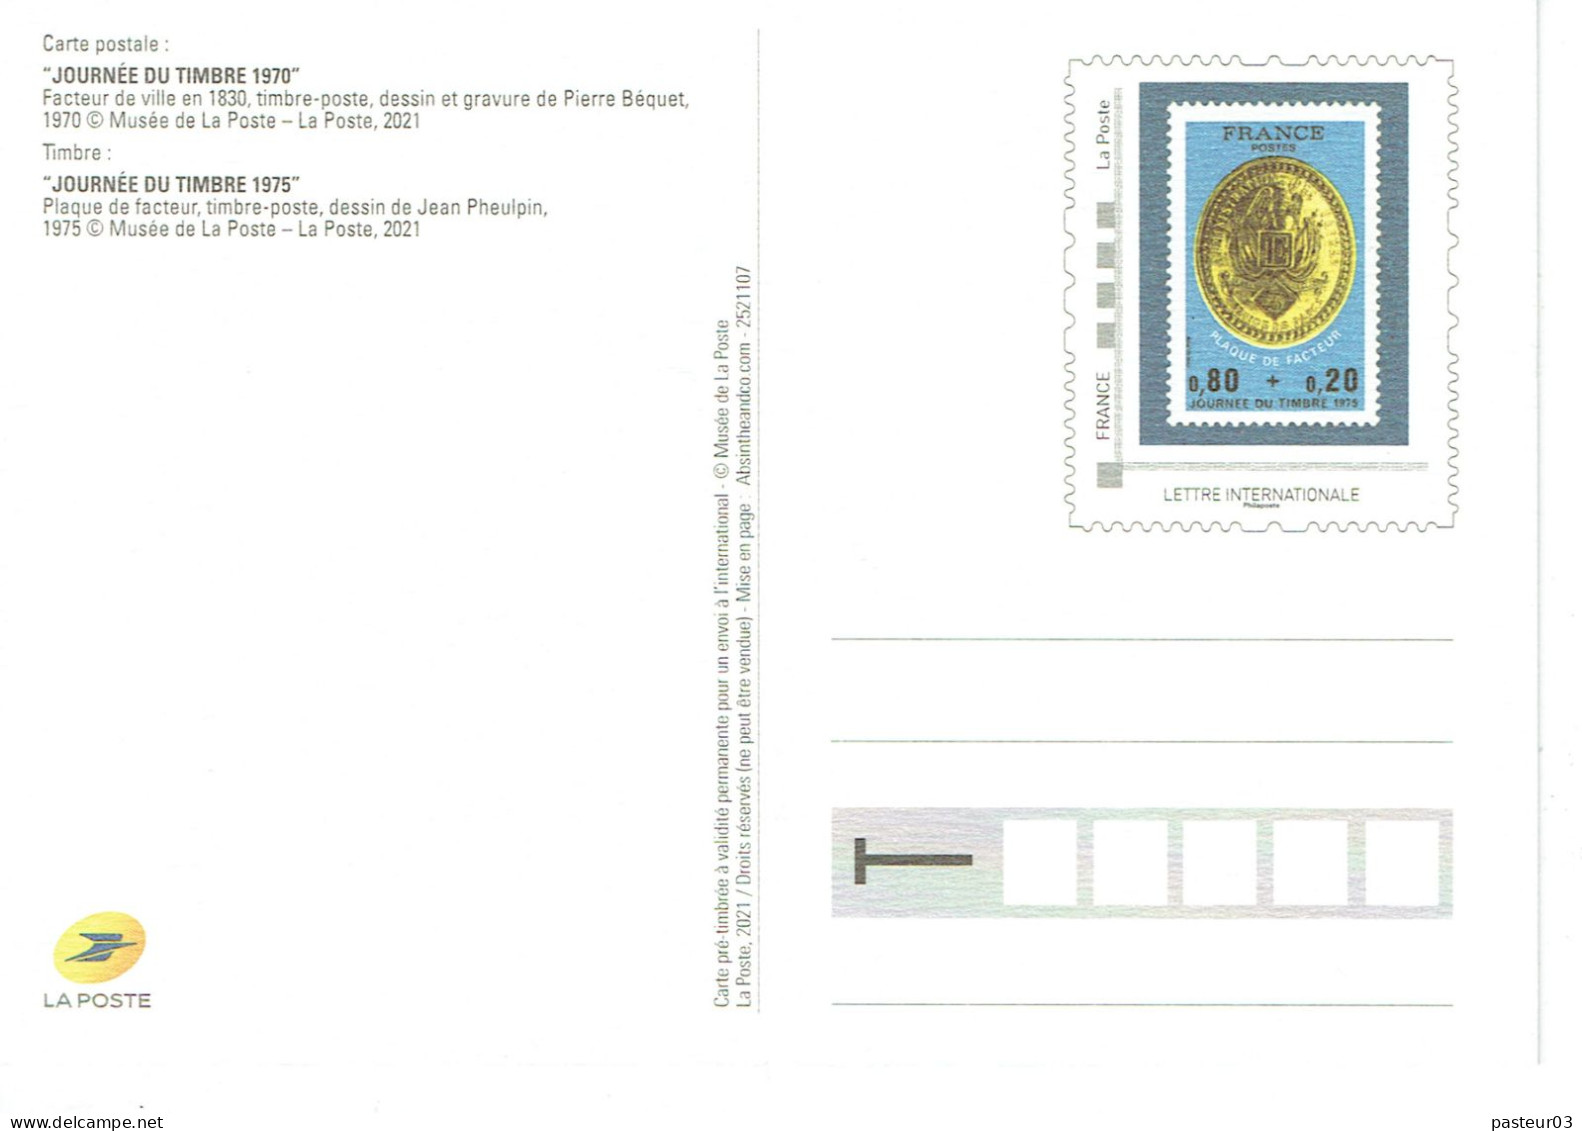 Série De 4 Entiers Journées Du Timbre Reproduction éditées Par Le Musée De La Poste Voir Liste Tarif International - Cartes-lettres